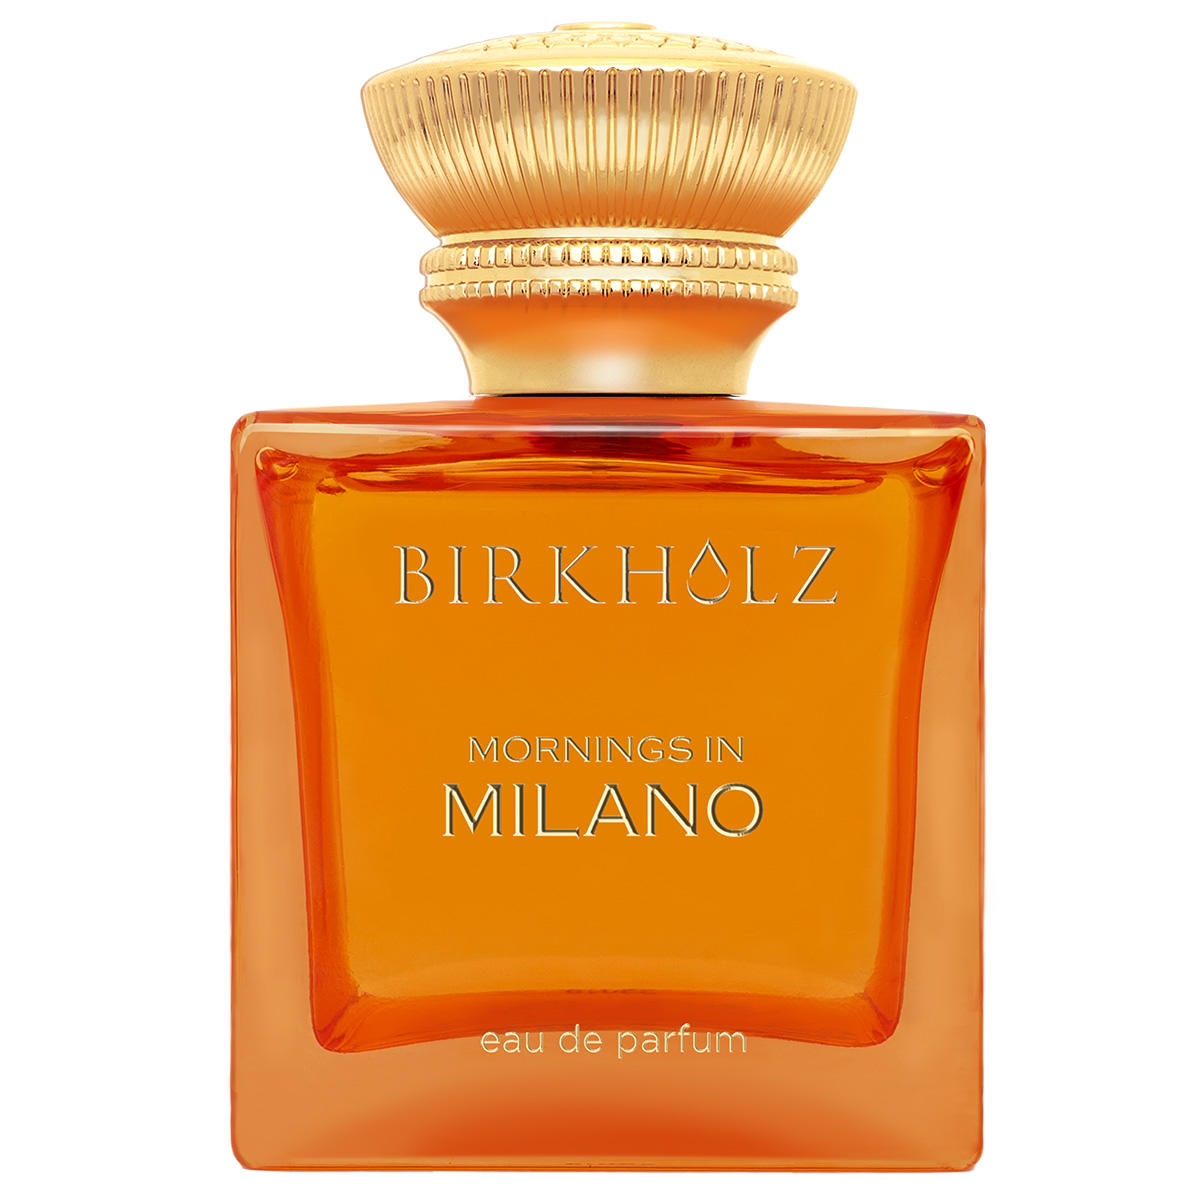 BIRKHOLZ Mornings in Milano Eau de Parfum 100 ml - 1